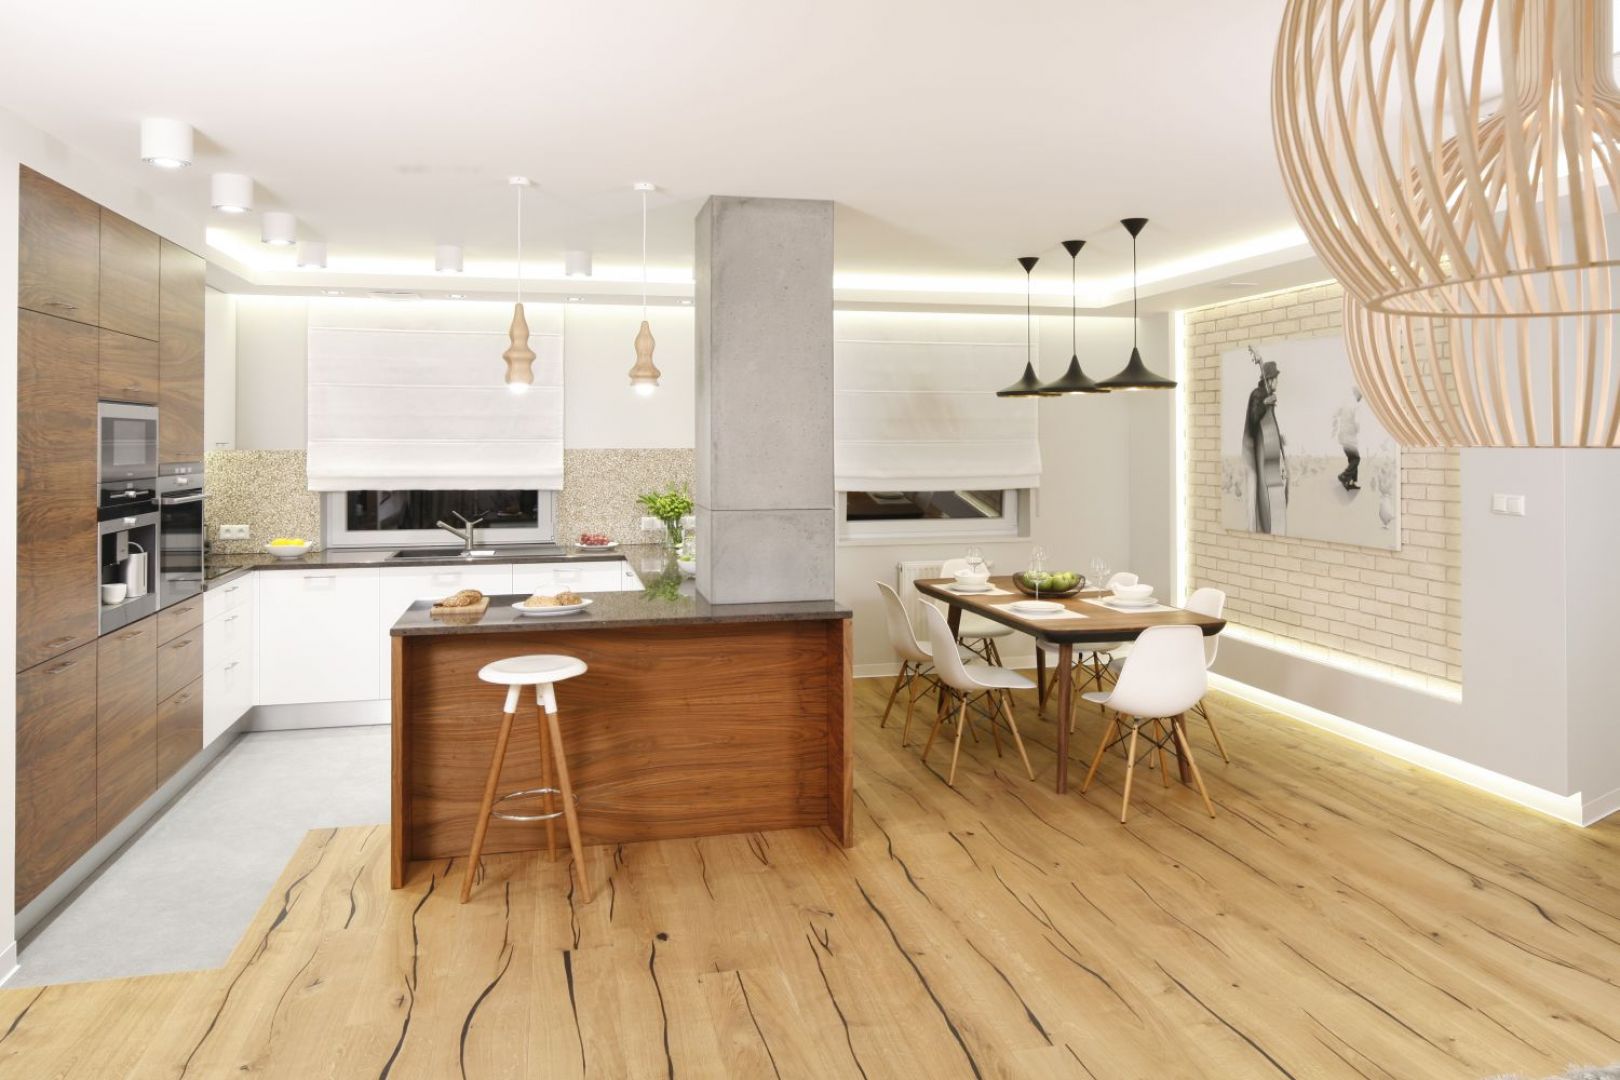 Kuchnia płynnie łączy się z salonem i jadalnią. Stylistycznie wszystkie przestrzenie spajają użyte w aranżacji materiały, w tym beton. Projekt Agnieszka Hajdas-Obajtek. Fot. Bartosz Jarosz.